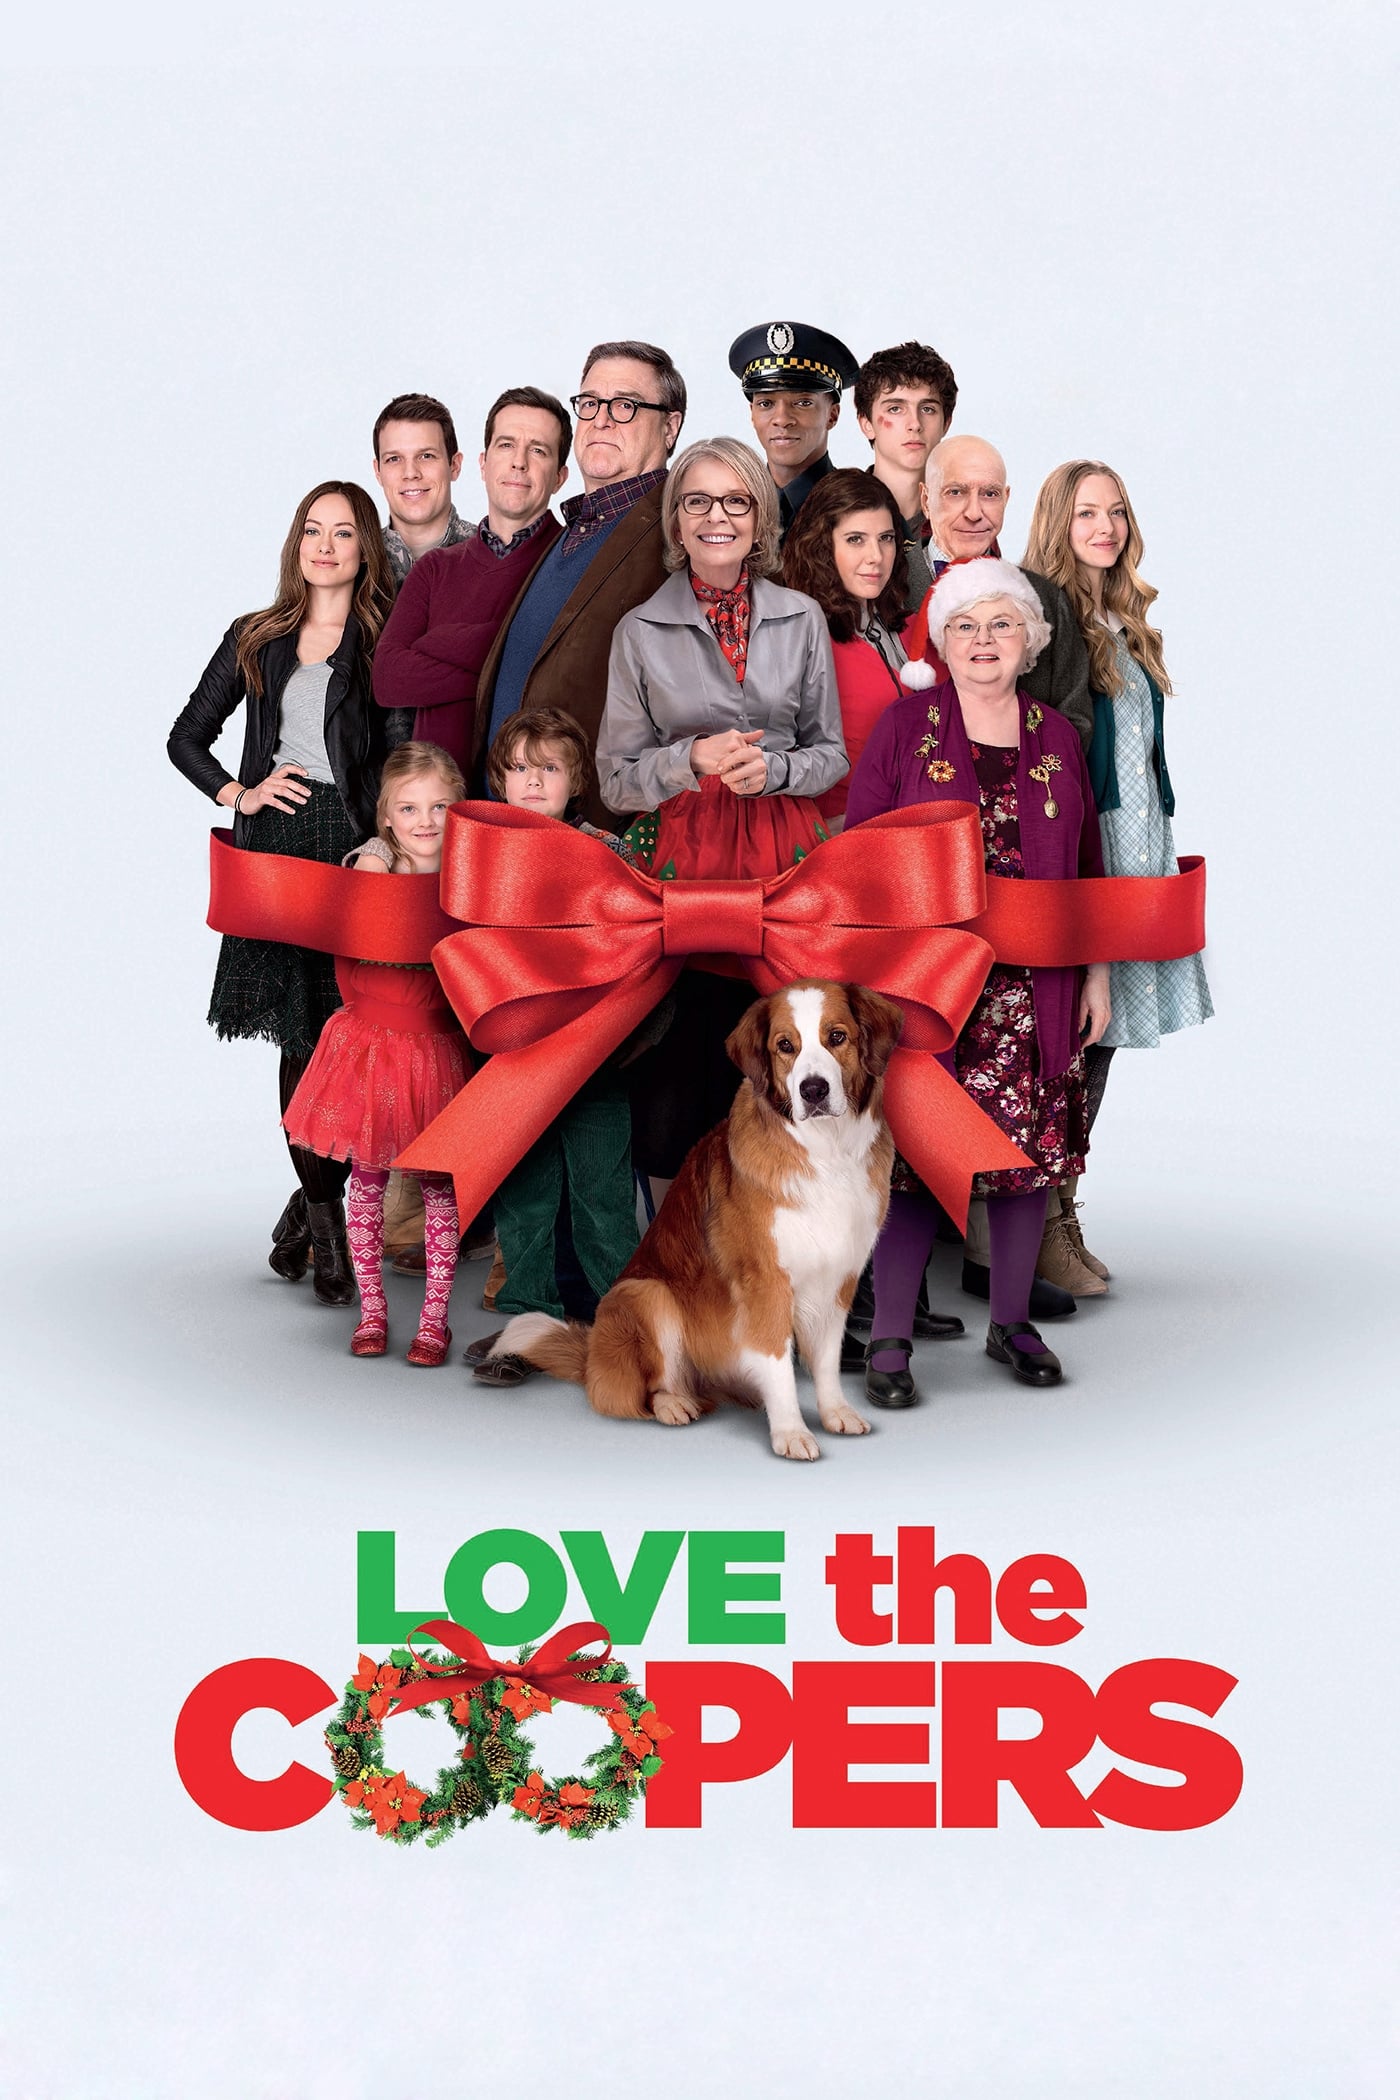 Alle Jahre wieder - Weihnachten mit den Coopers (2015)